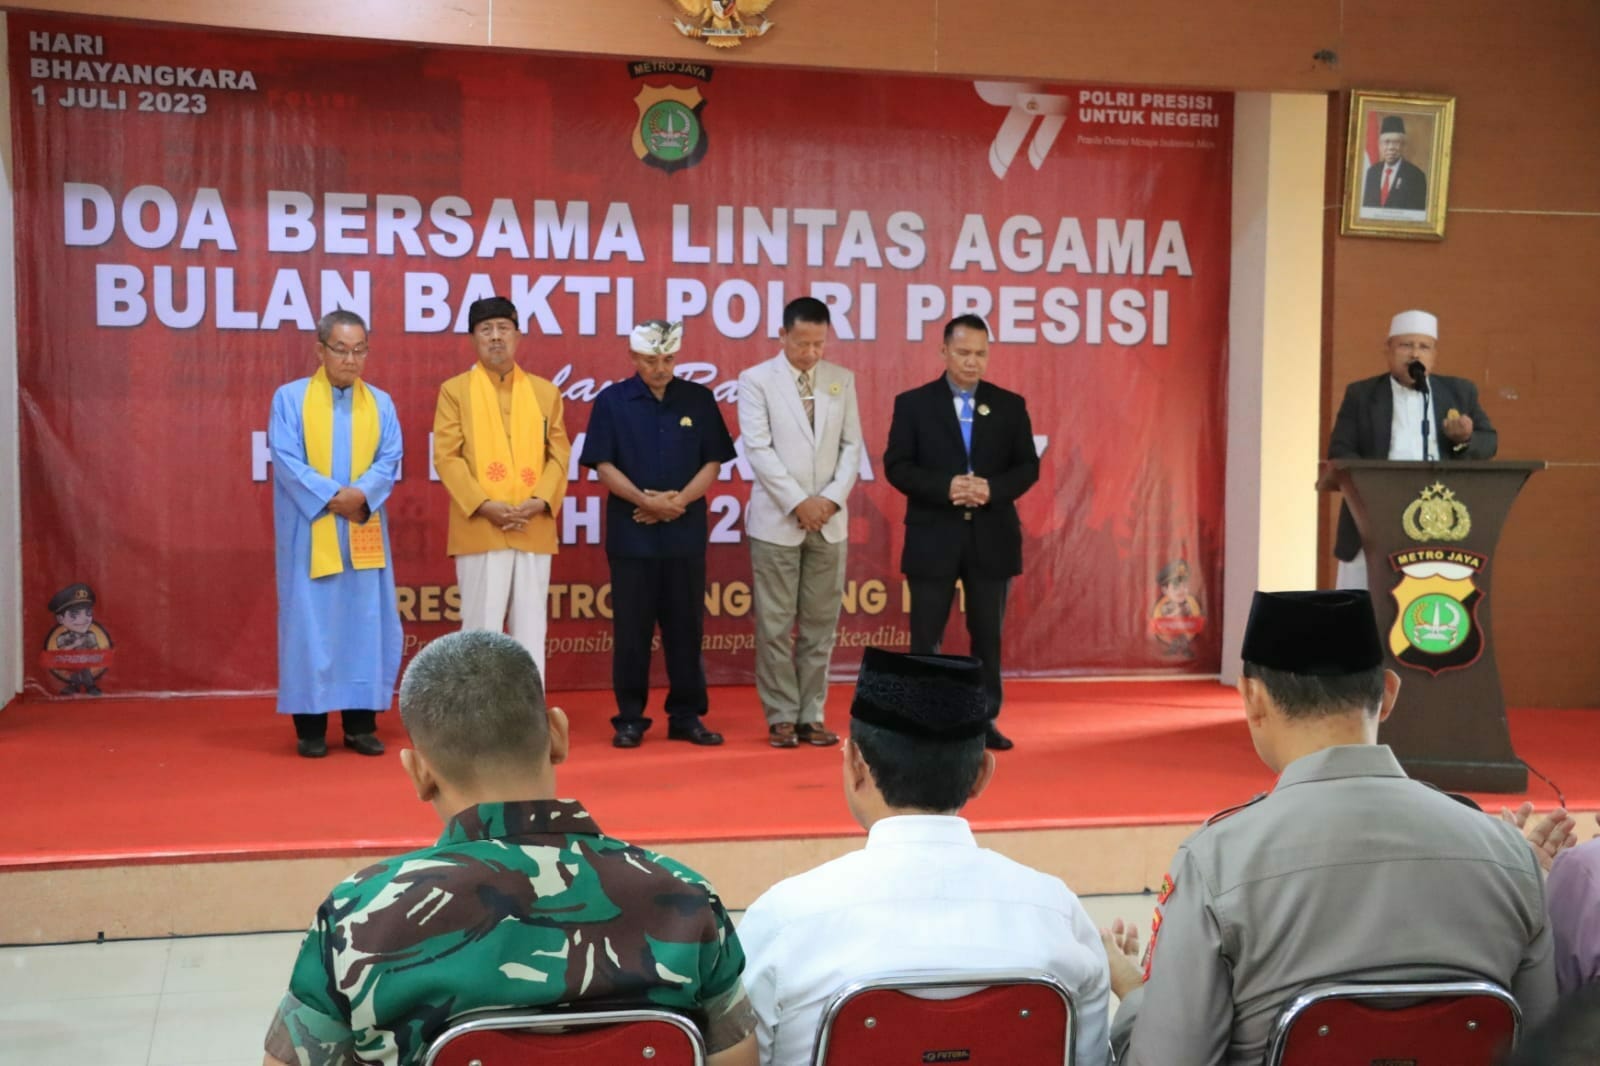 Kapolres Doa Bersama Lintas Agama 'Polri Presisi untuk Negeri' di Kota Tangerang